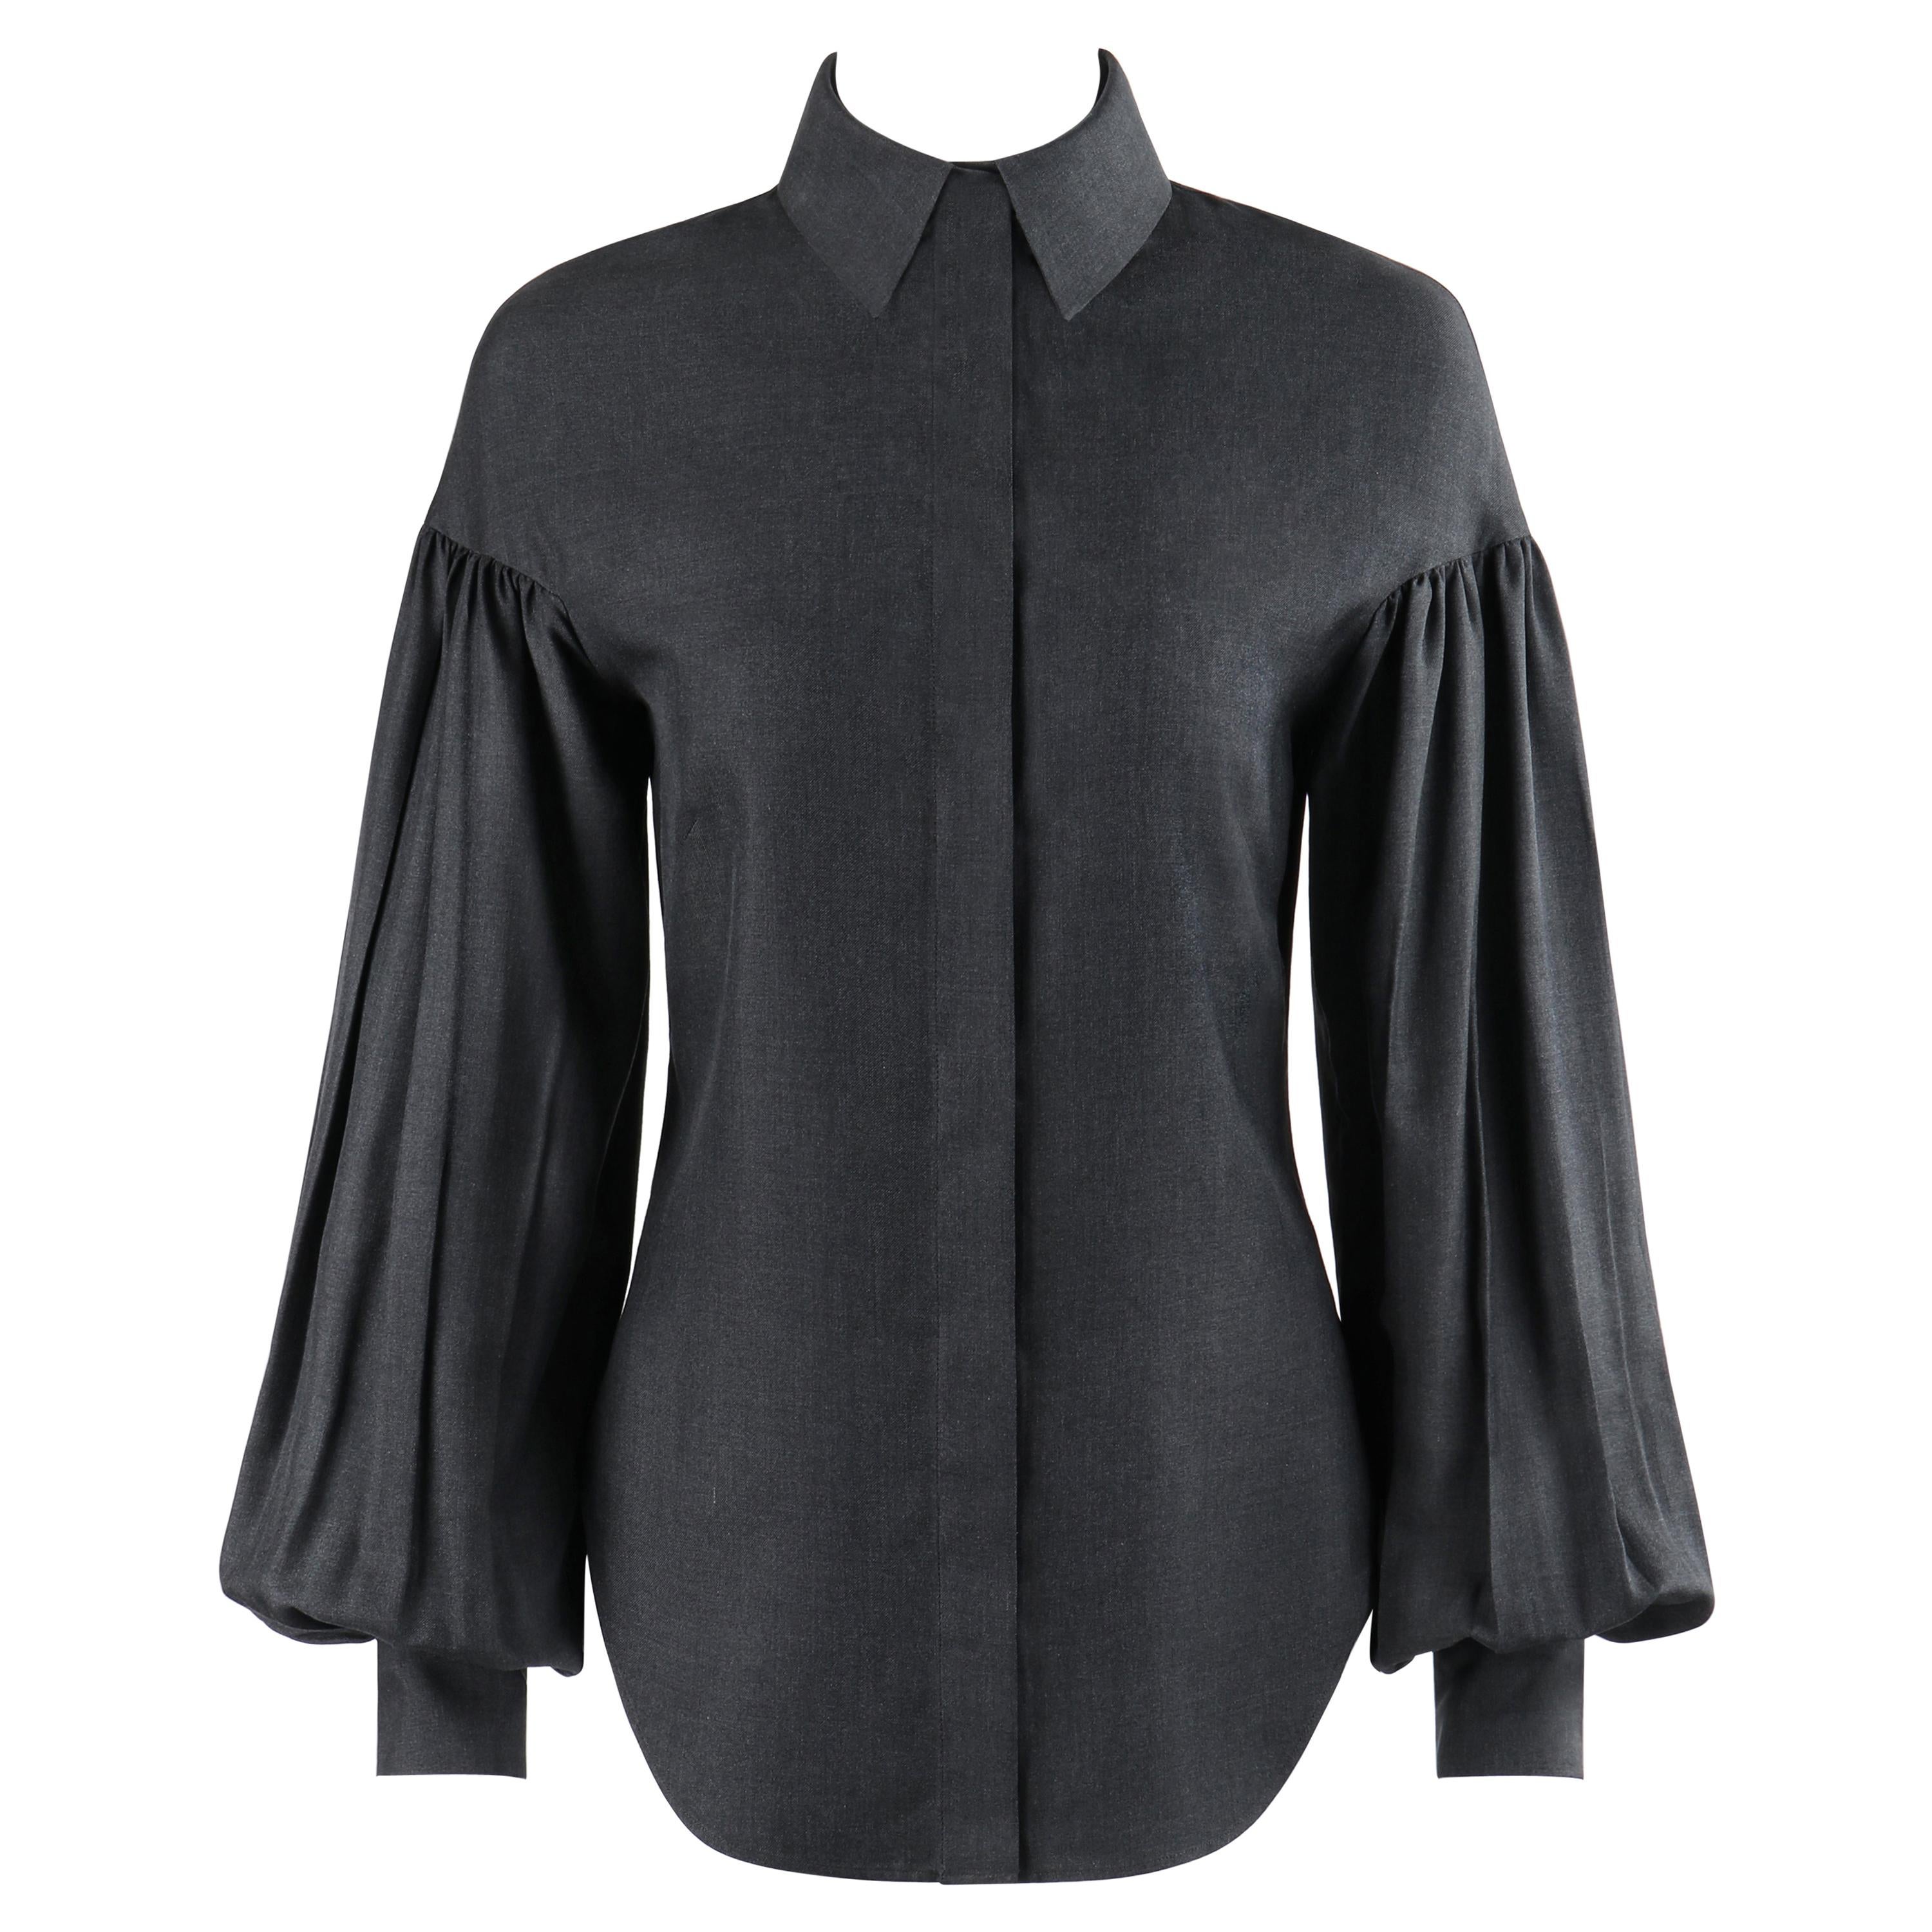  ALEXANDER McQUEEN A/W 1999 “The Overlook” Dark Gray Pleated Bishop Sleeve Top For Sale